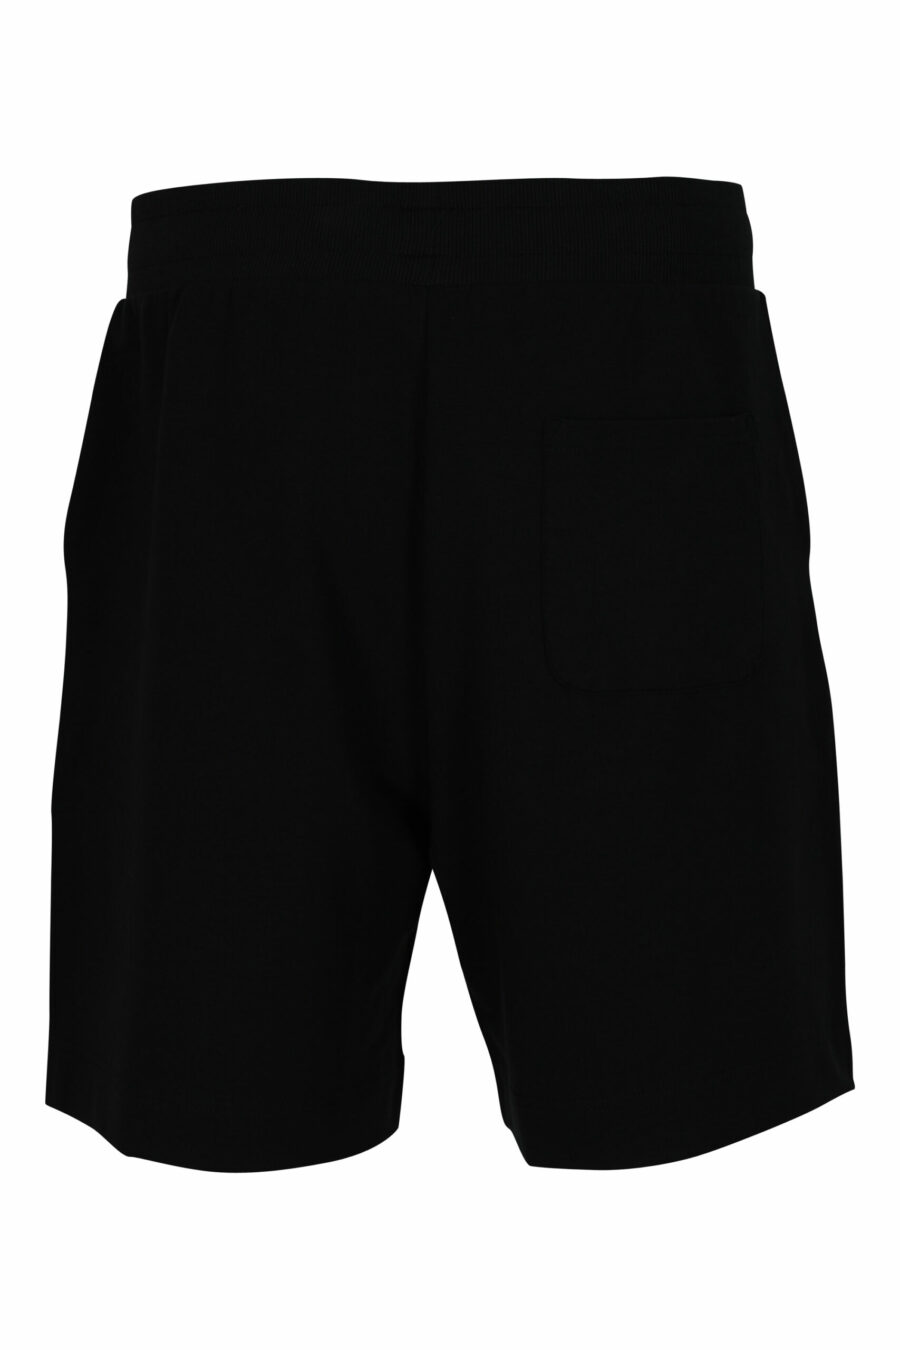 Pantalón de chándal corto negro con logo en bolsillos - 667113623504 1 scaled